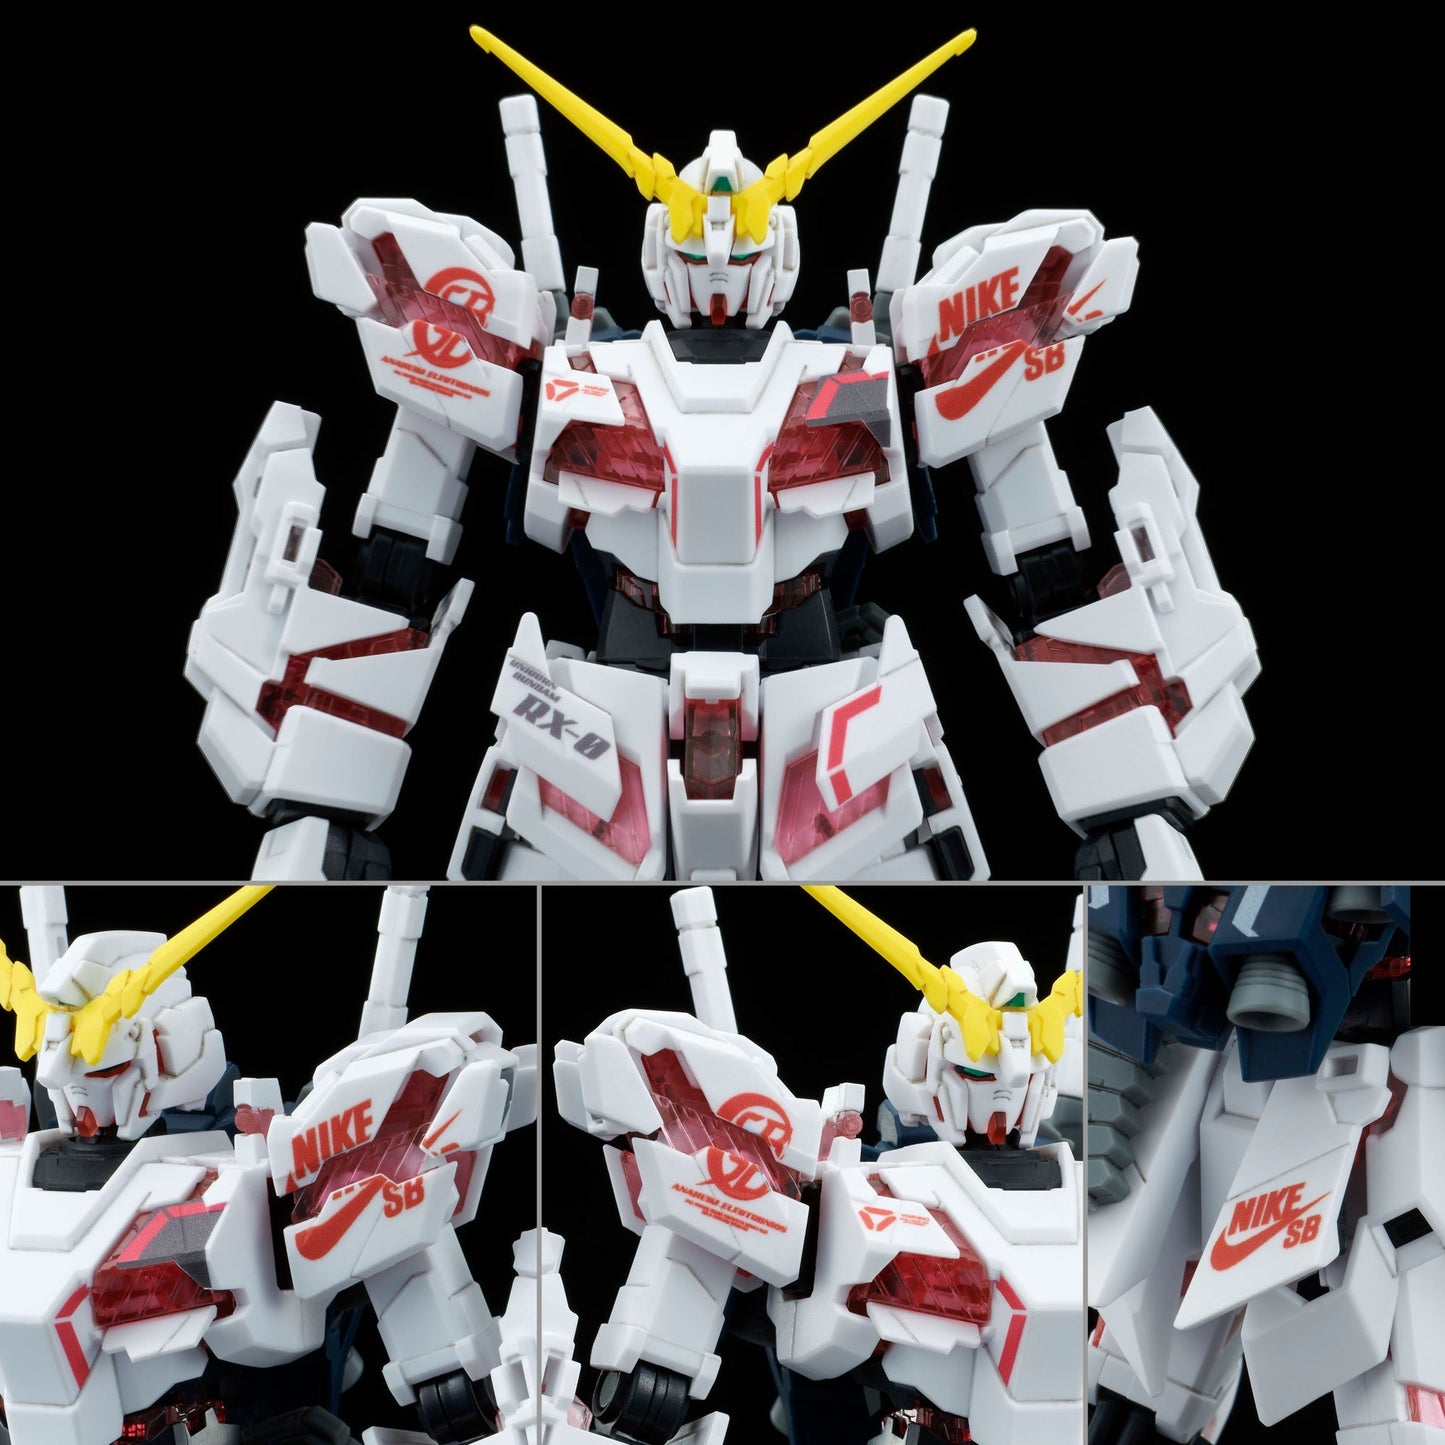 Bandai Gundam x Nike SB Unicorn (Destroy Mode) (1/144 Scale) HG Model Kit Action Figure